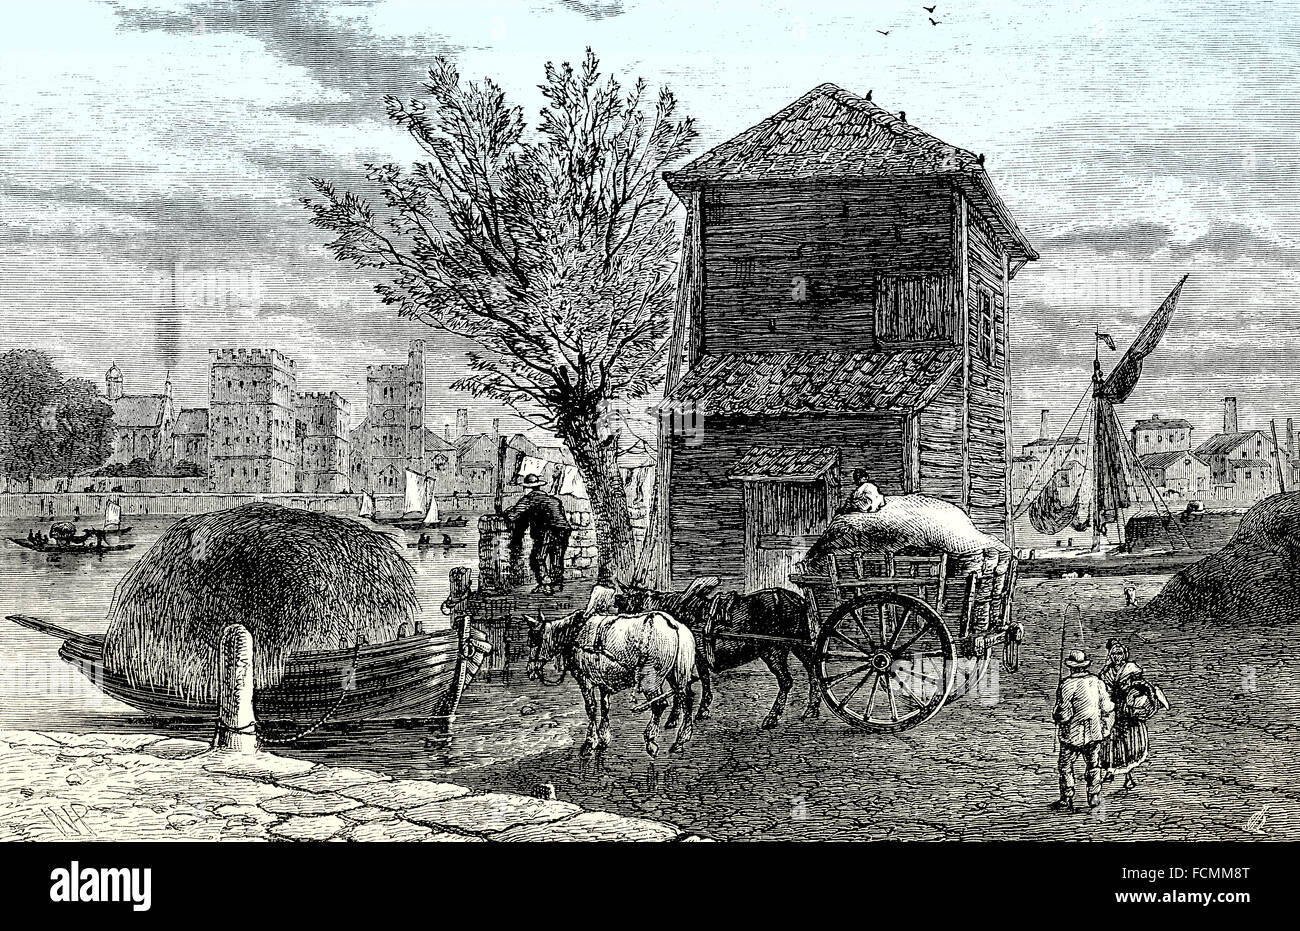 La vieille ville de Westminster, Horseferry, 1800, Londres, Angleterre Banque D'Images